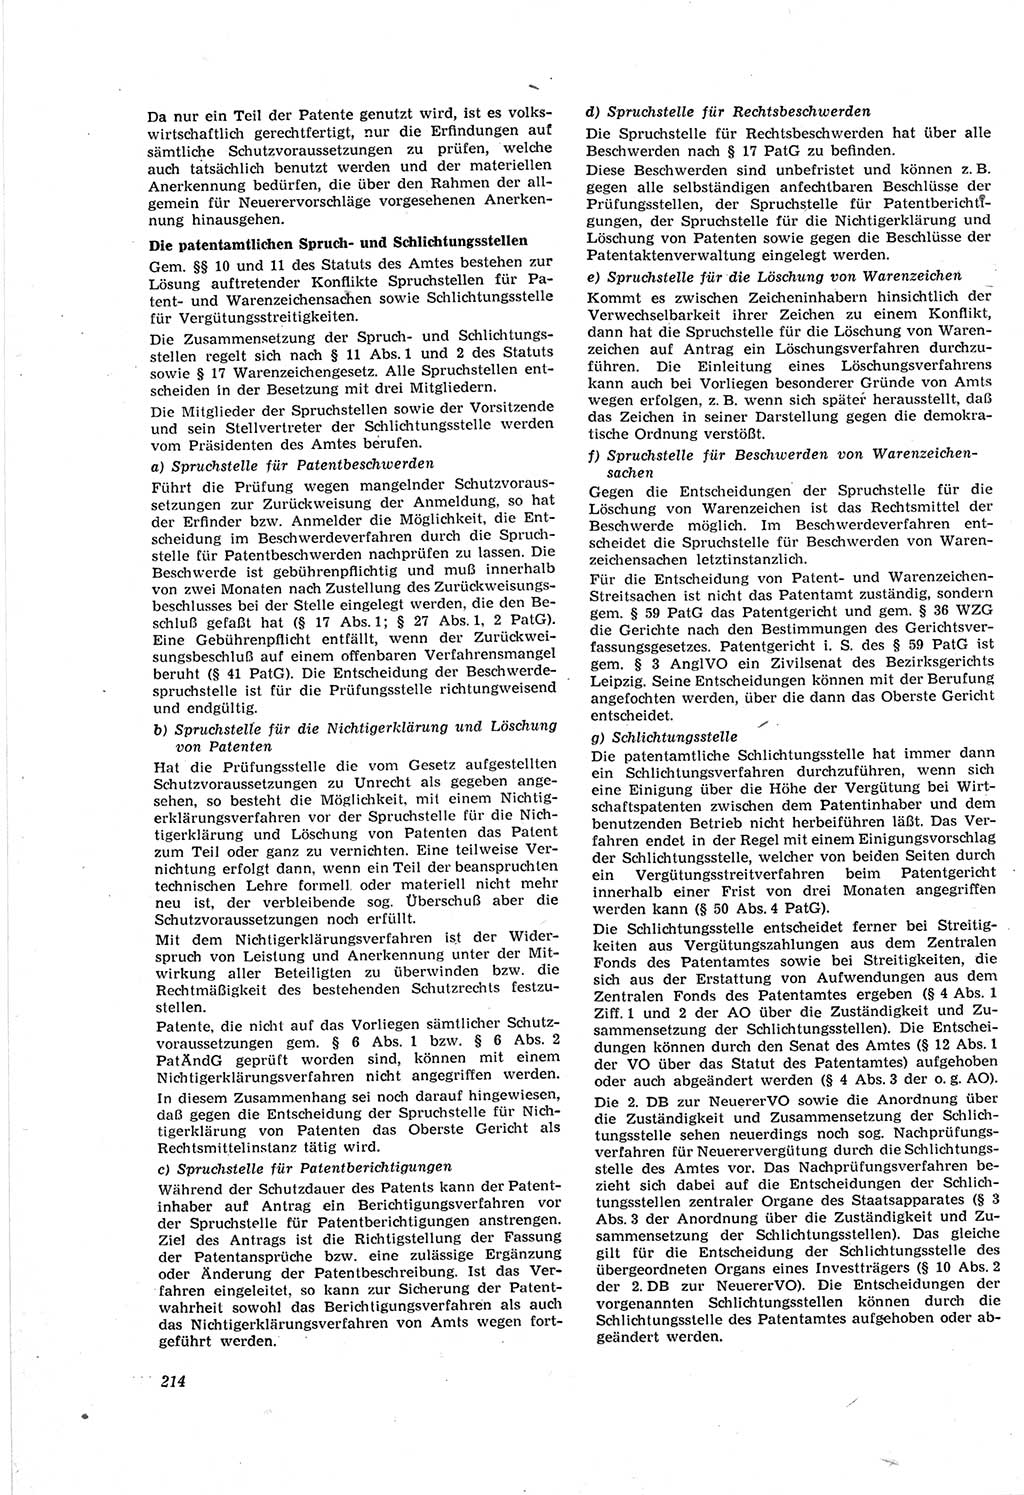 Neue Justiz (NJ), Zeitschrift für Recht und Rechtswissenschaft [Deutsche Demokratische Republik (DDR)], 18. Jahrgang 1964, Seite 214 (NJ DDR 1964, S. 214)